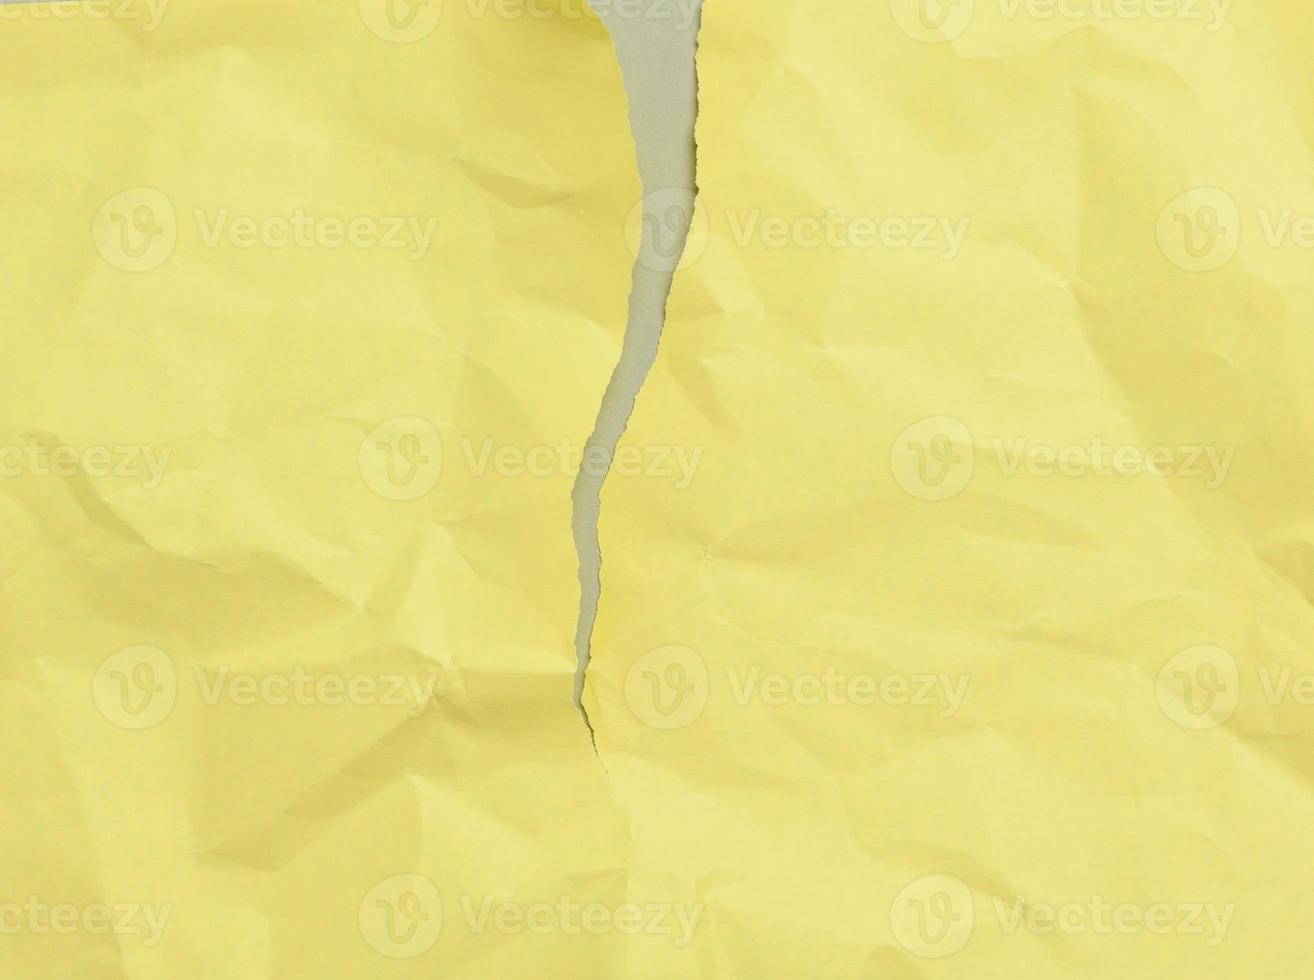 folha de papel amarela amassada rasgada em branco sobre um fundo cinza foto